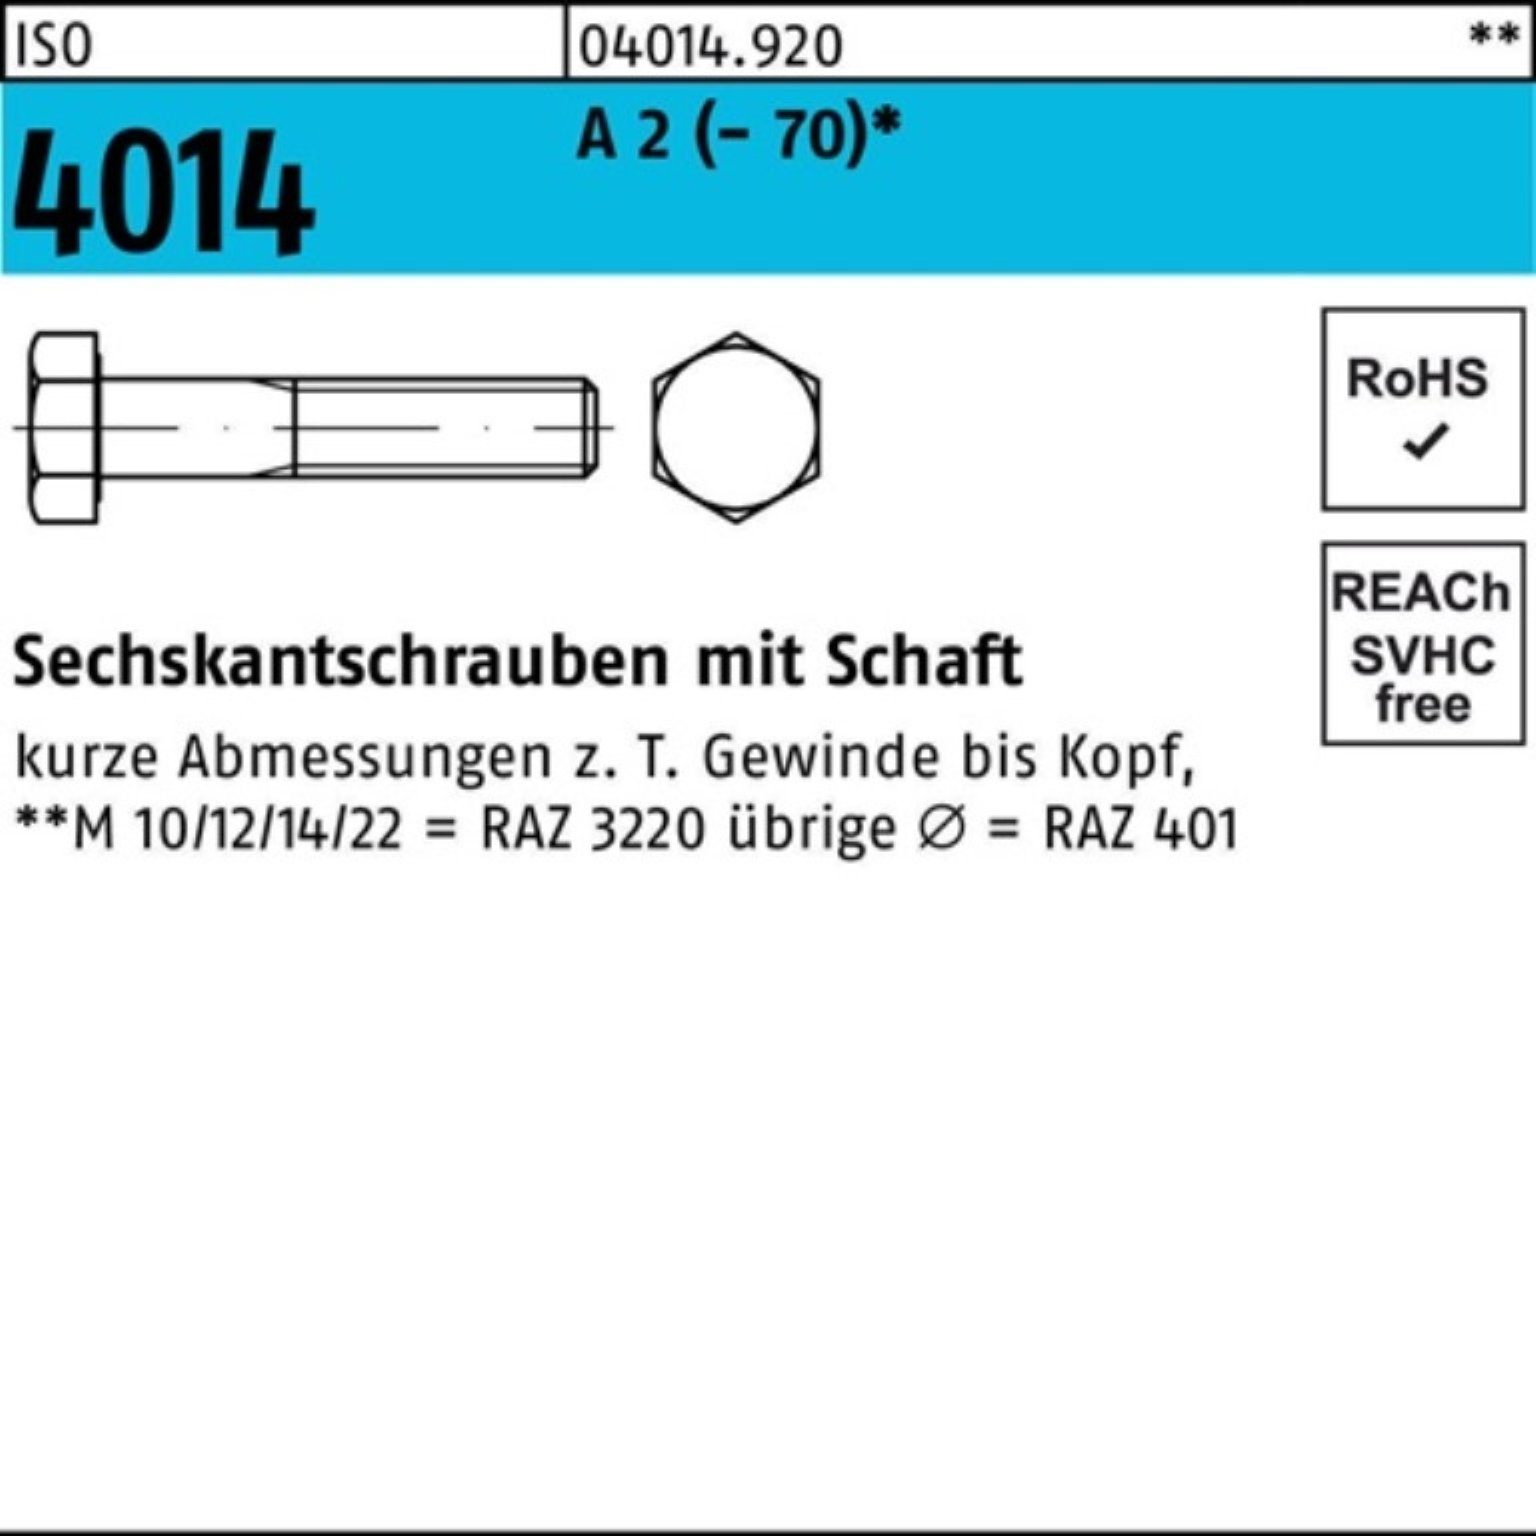 Bufab Sechskantschraube 100er Pack Sechskantschraube ISO 4014 Schaft M16x 200 A 2 (70) 1 St